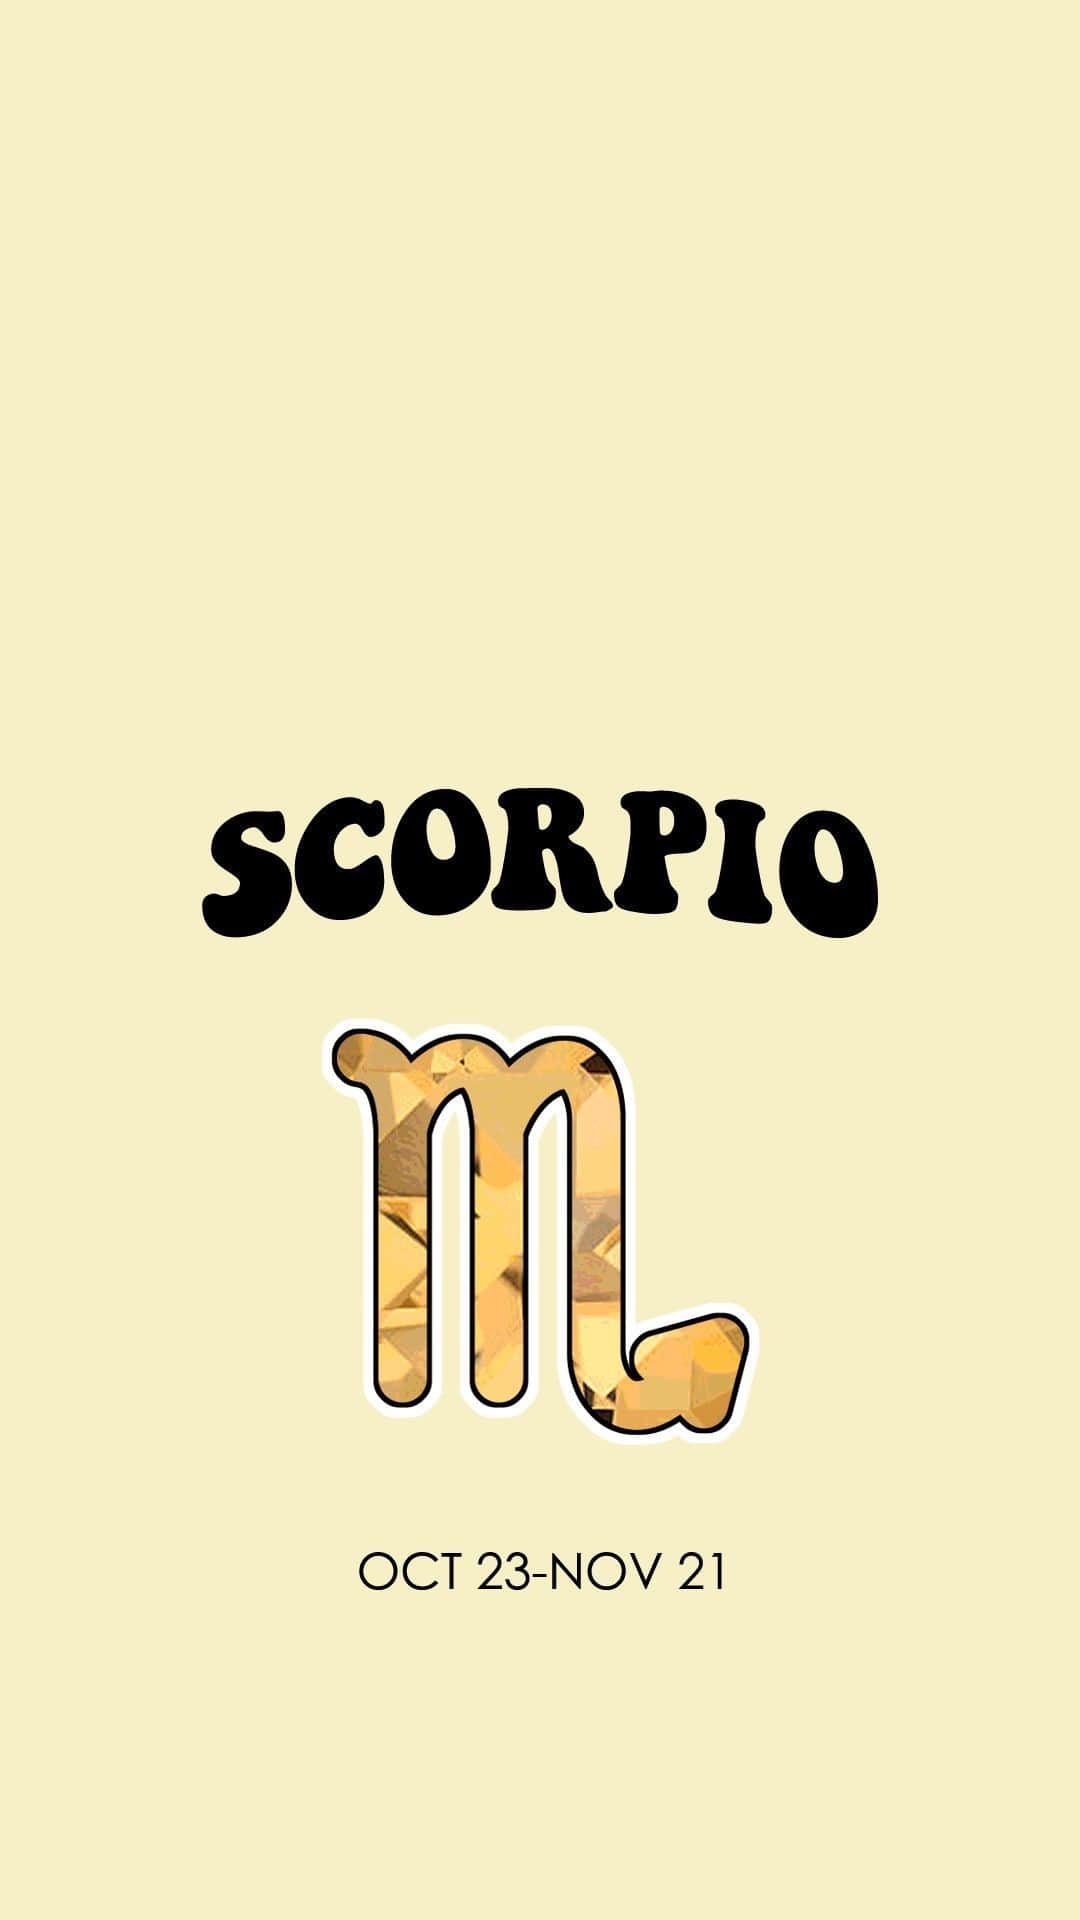 Scorpio Wallpaper - NawPic